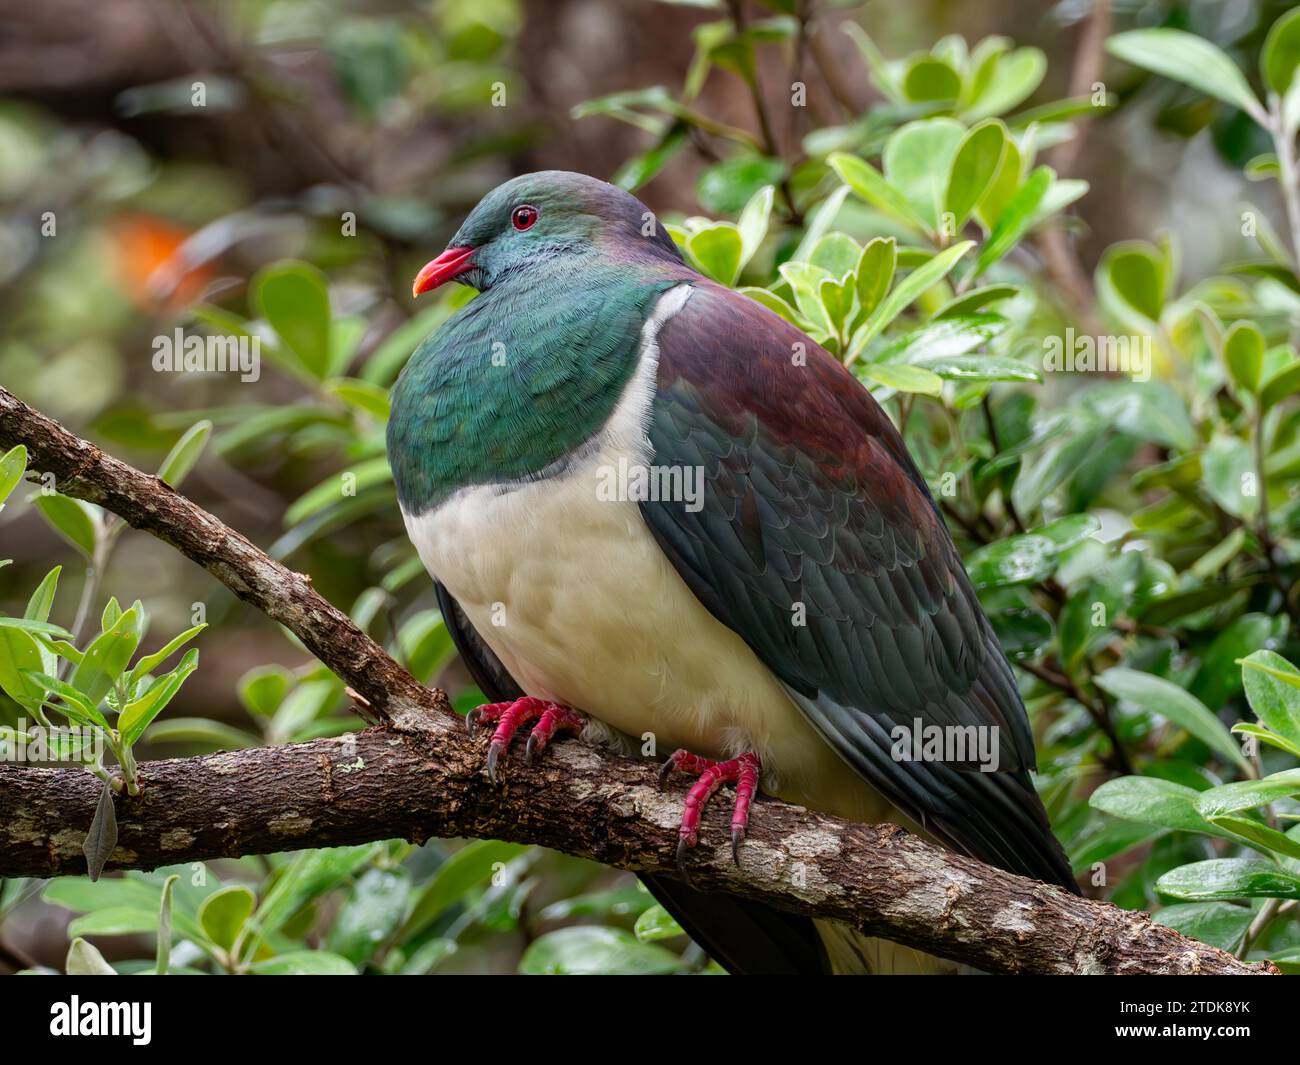 Pigeon de Nouvelle-Zélande, Hemiphaga novaeseelandiae, un oiseau endémique trouvé en Nouvelle-Zélande Banque D'Images